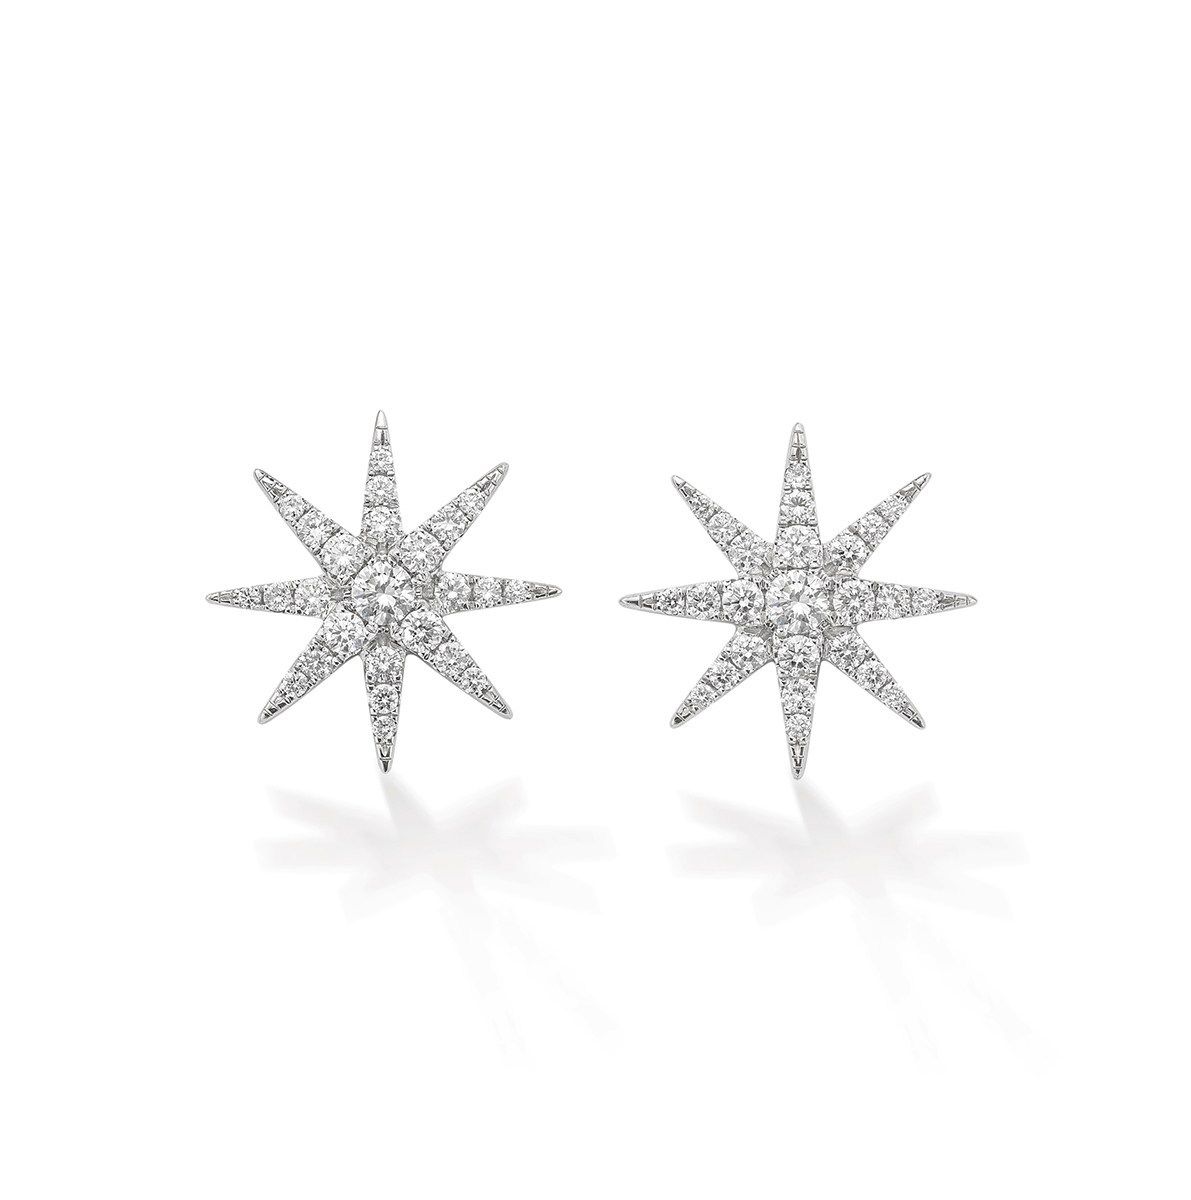 Tsar Star earrings